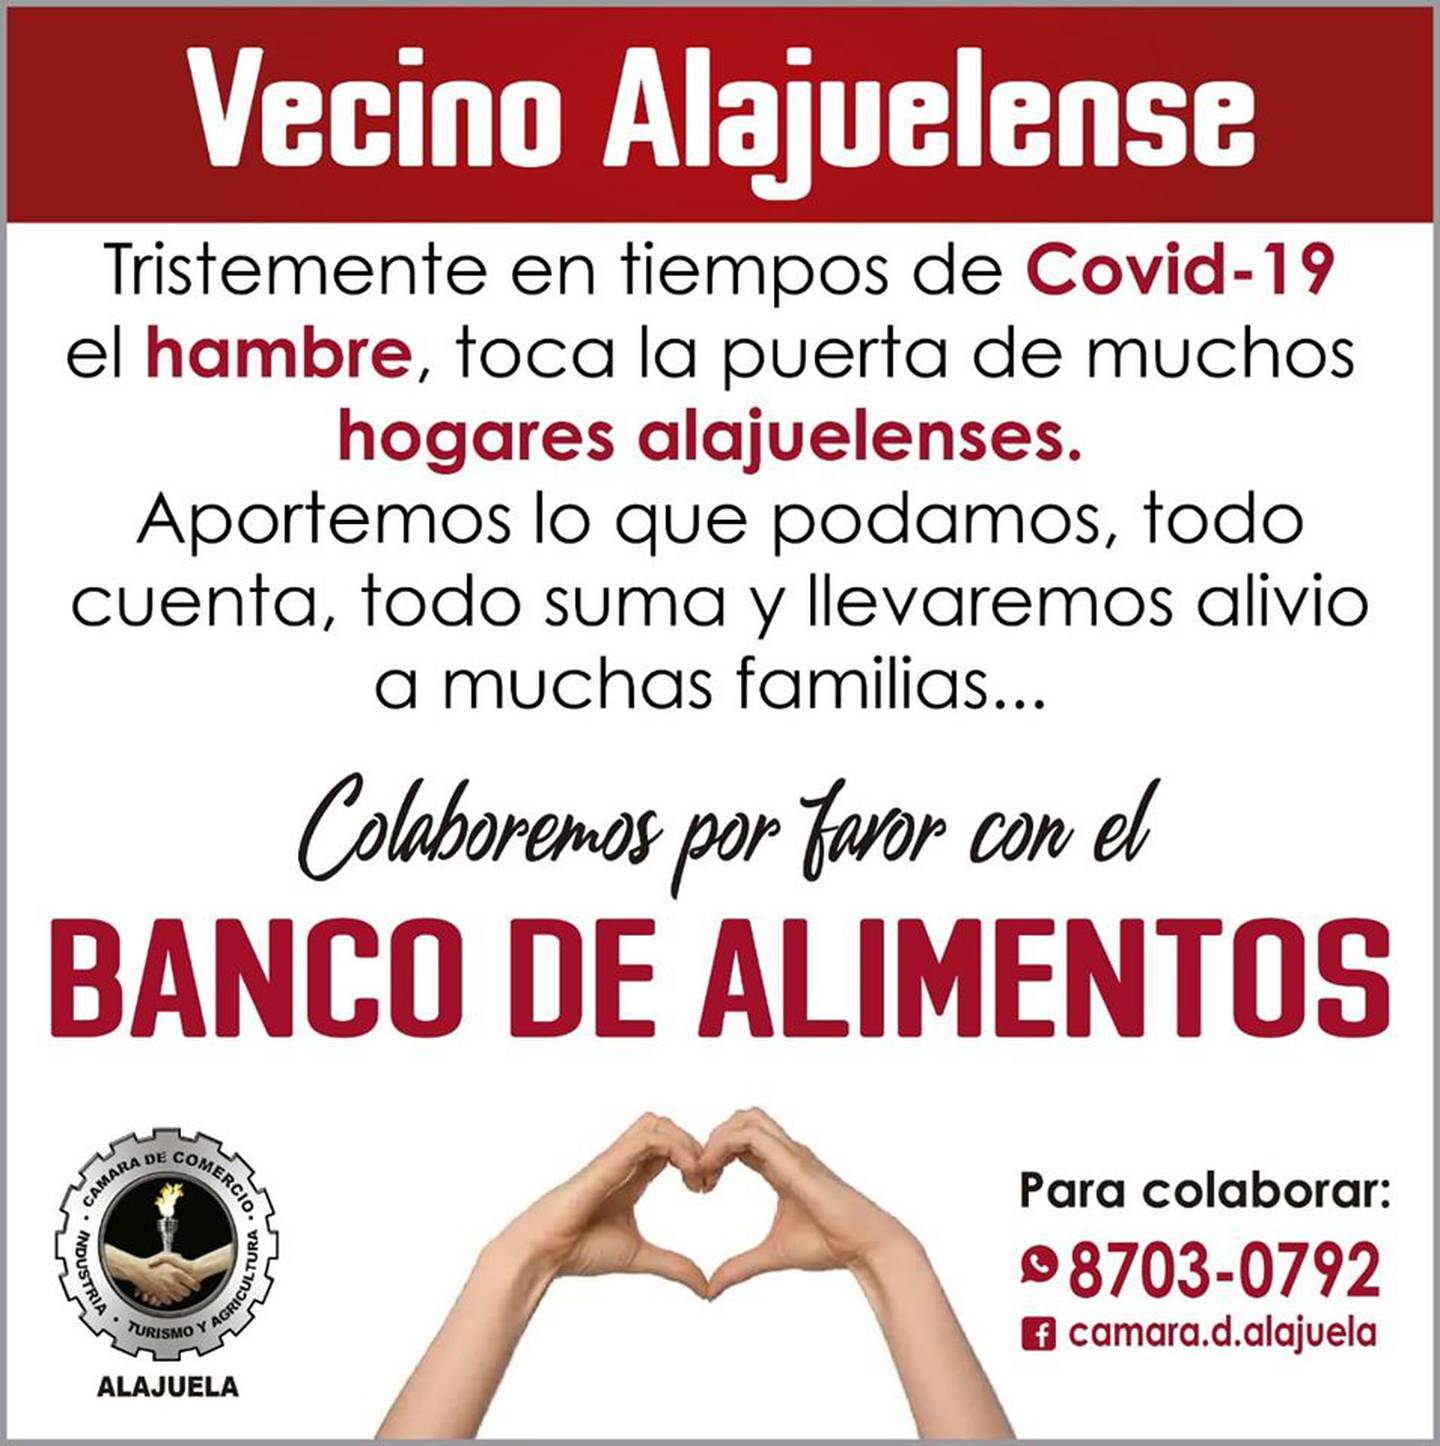 Alajuela organiza un banco de alimentos para familias afectadas por la pandemia